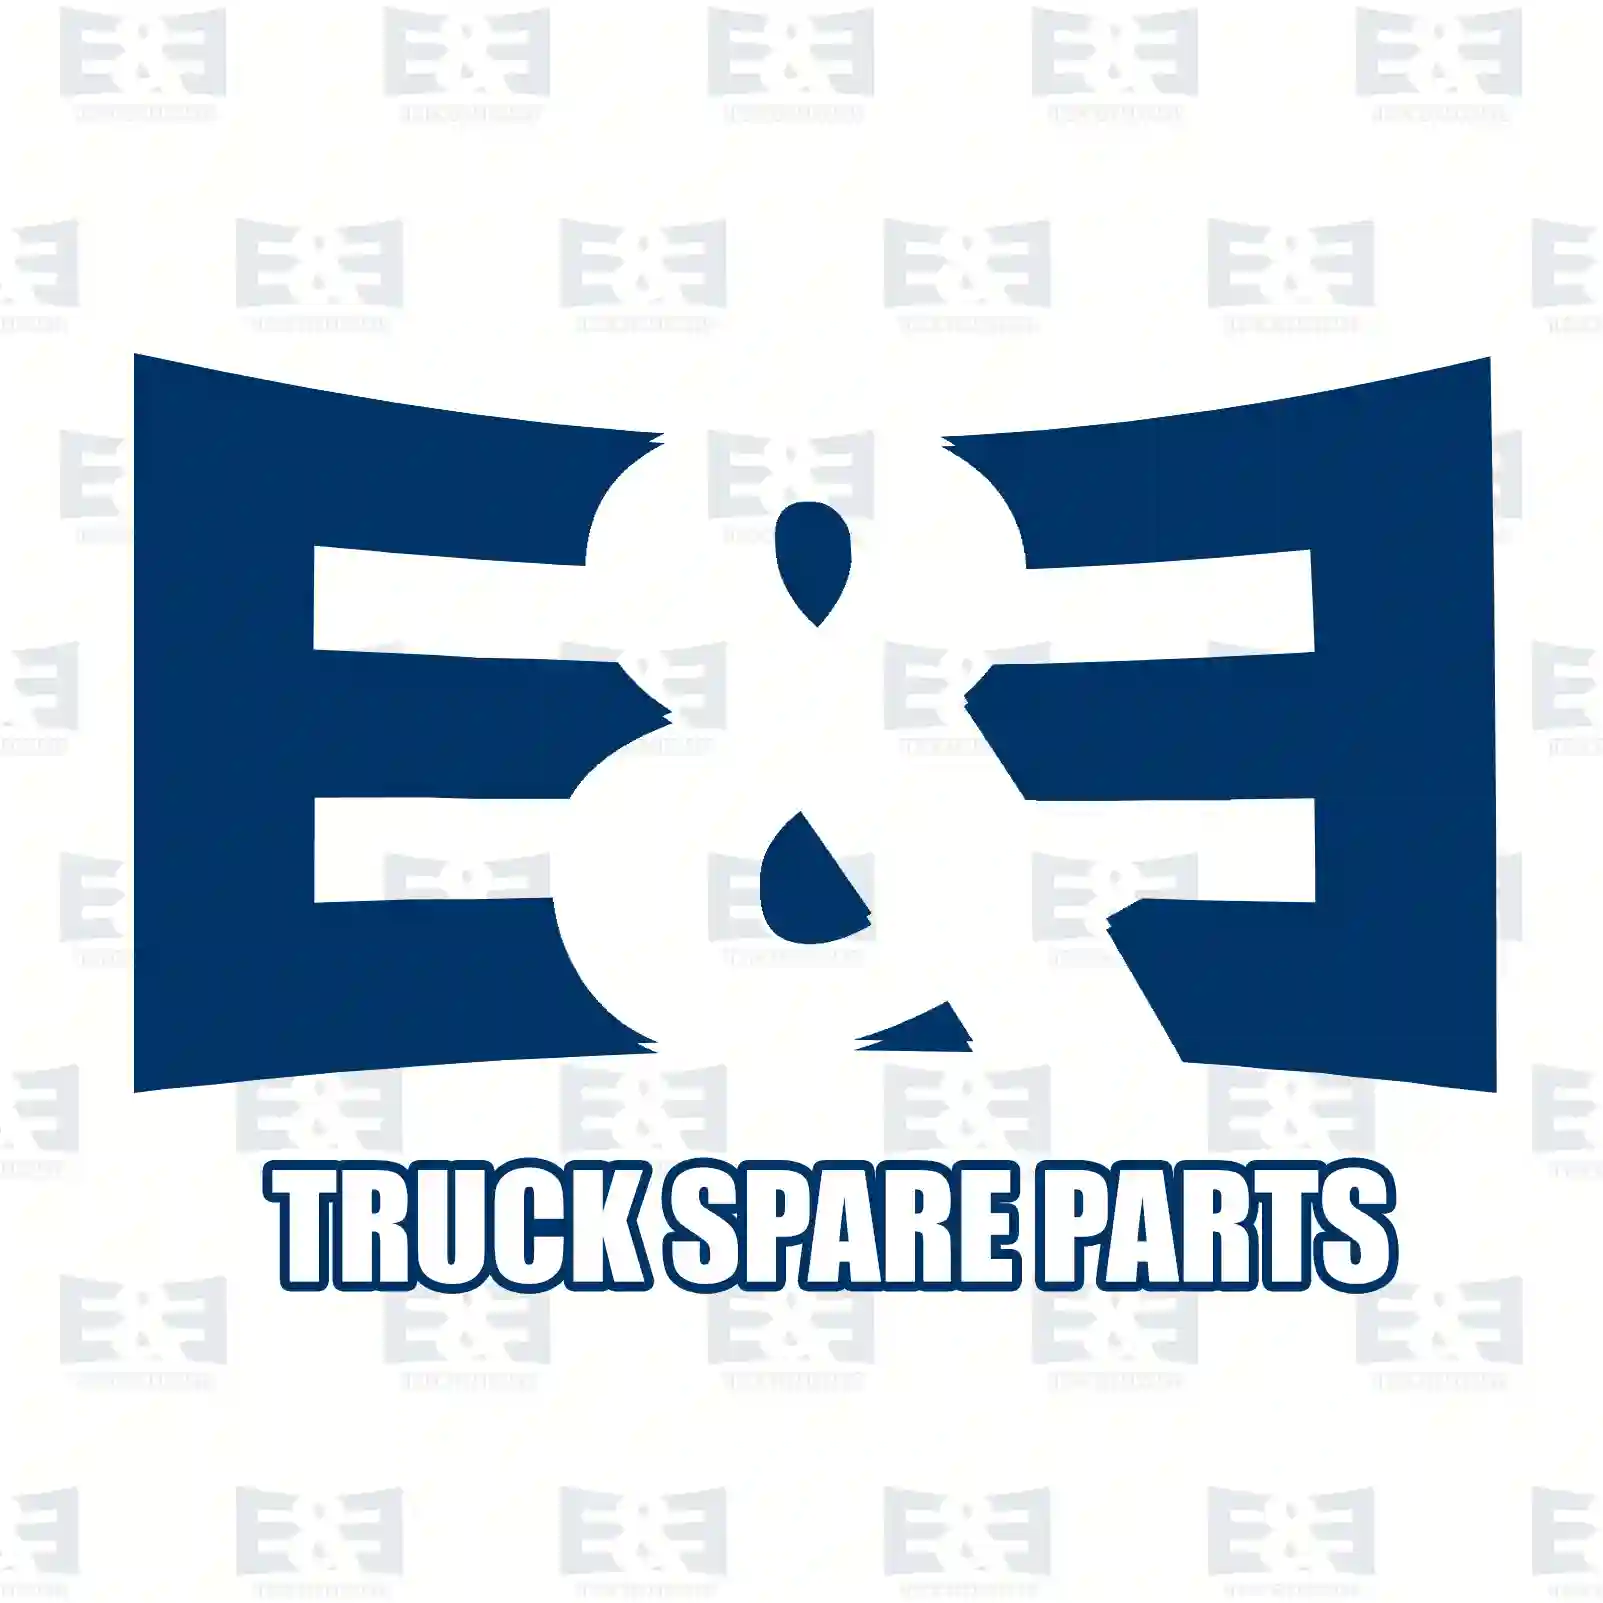 Brake cylinder, right, 2E2296821, 81511016372, 81511016374, 81511016408, ||  2E2296821 E&E Truck Spare Parts | Truck Spare Parts, Auotomotive Spare Parts Brake cylinder, right, 2E2296821, 81511016372, 81511016374, 81511016408, ||  2E2296821 E&E Truck Spare Parts | Truck Spare Parts, Auotomotive Spare Parts